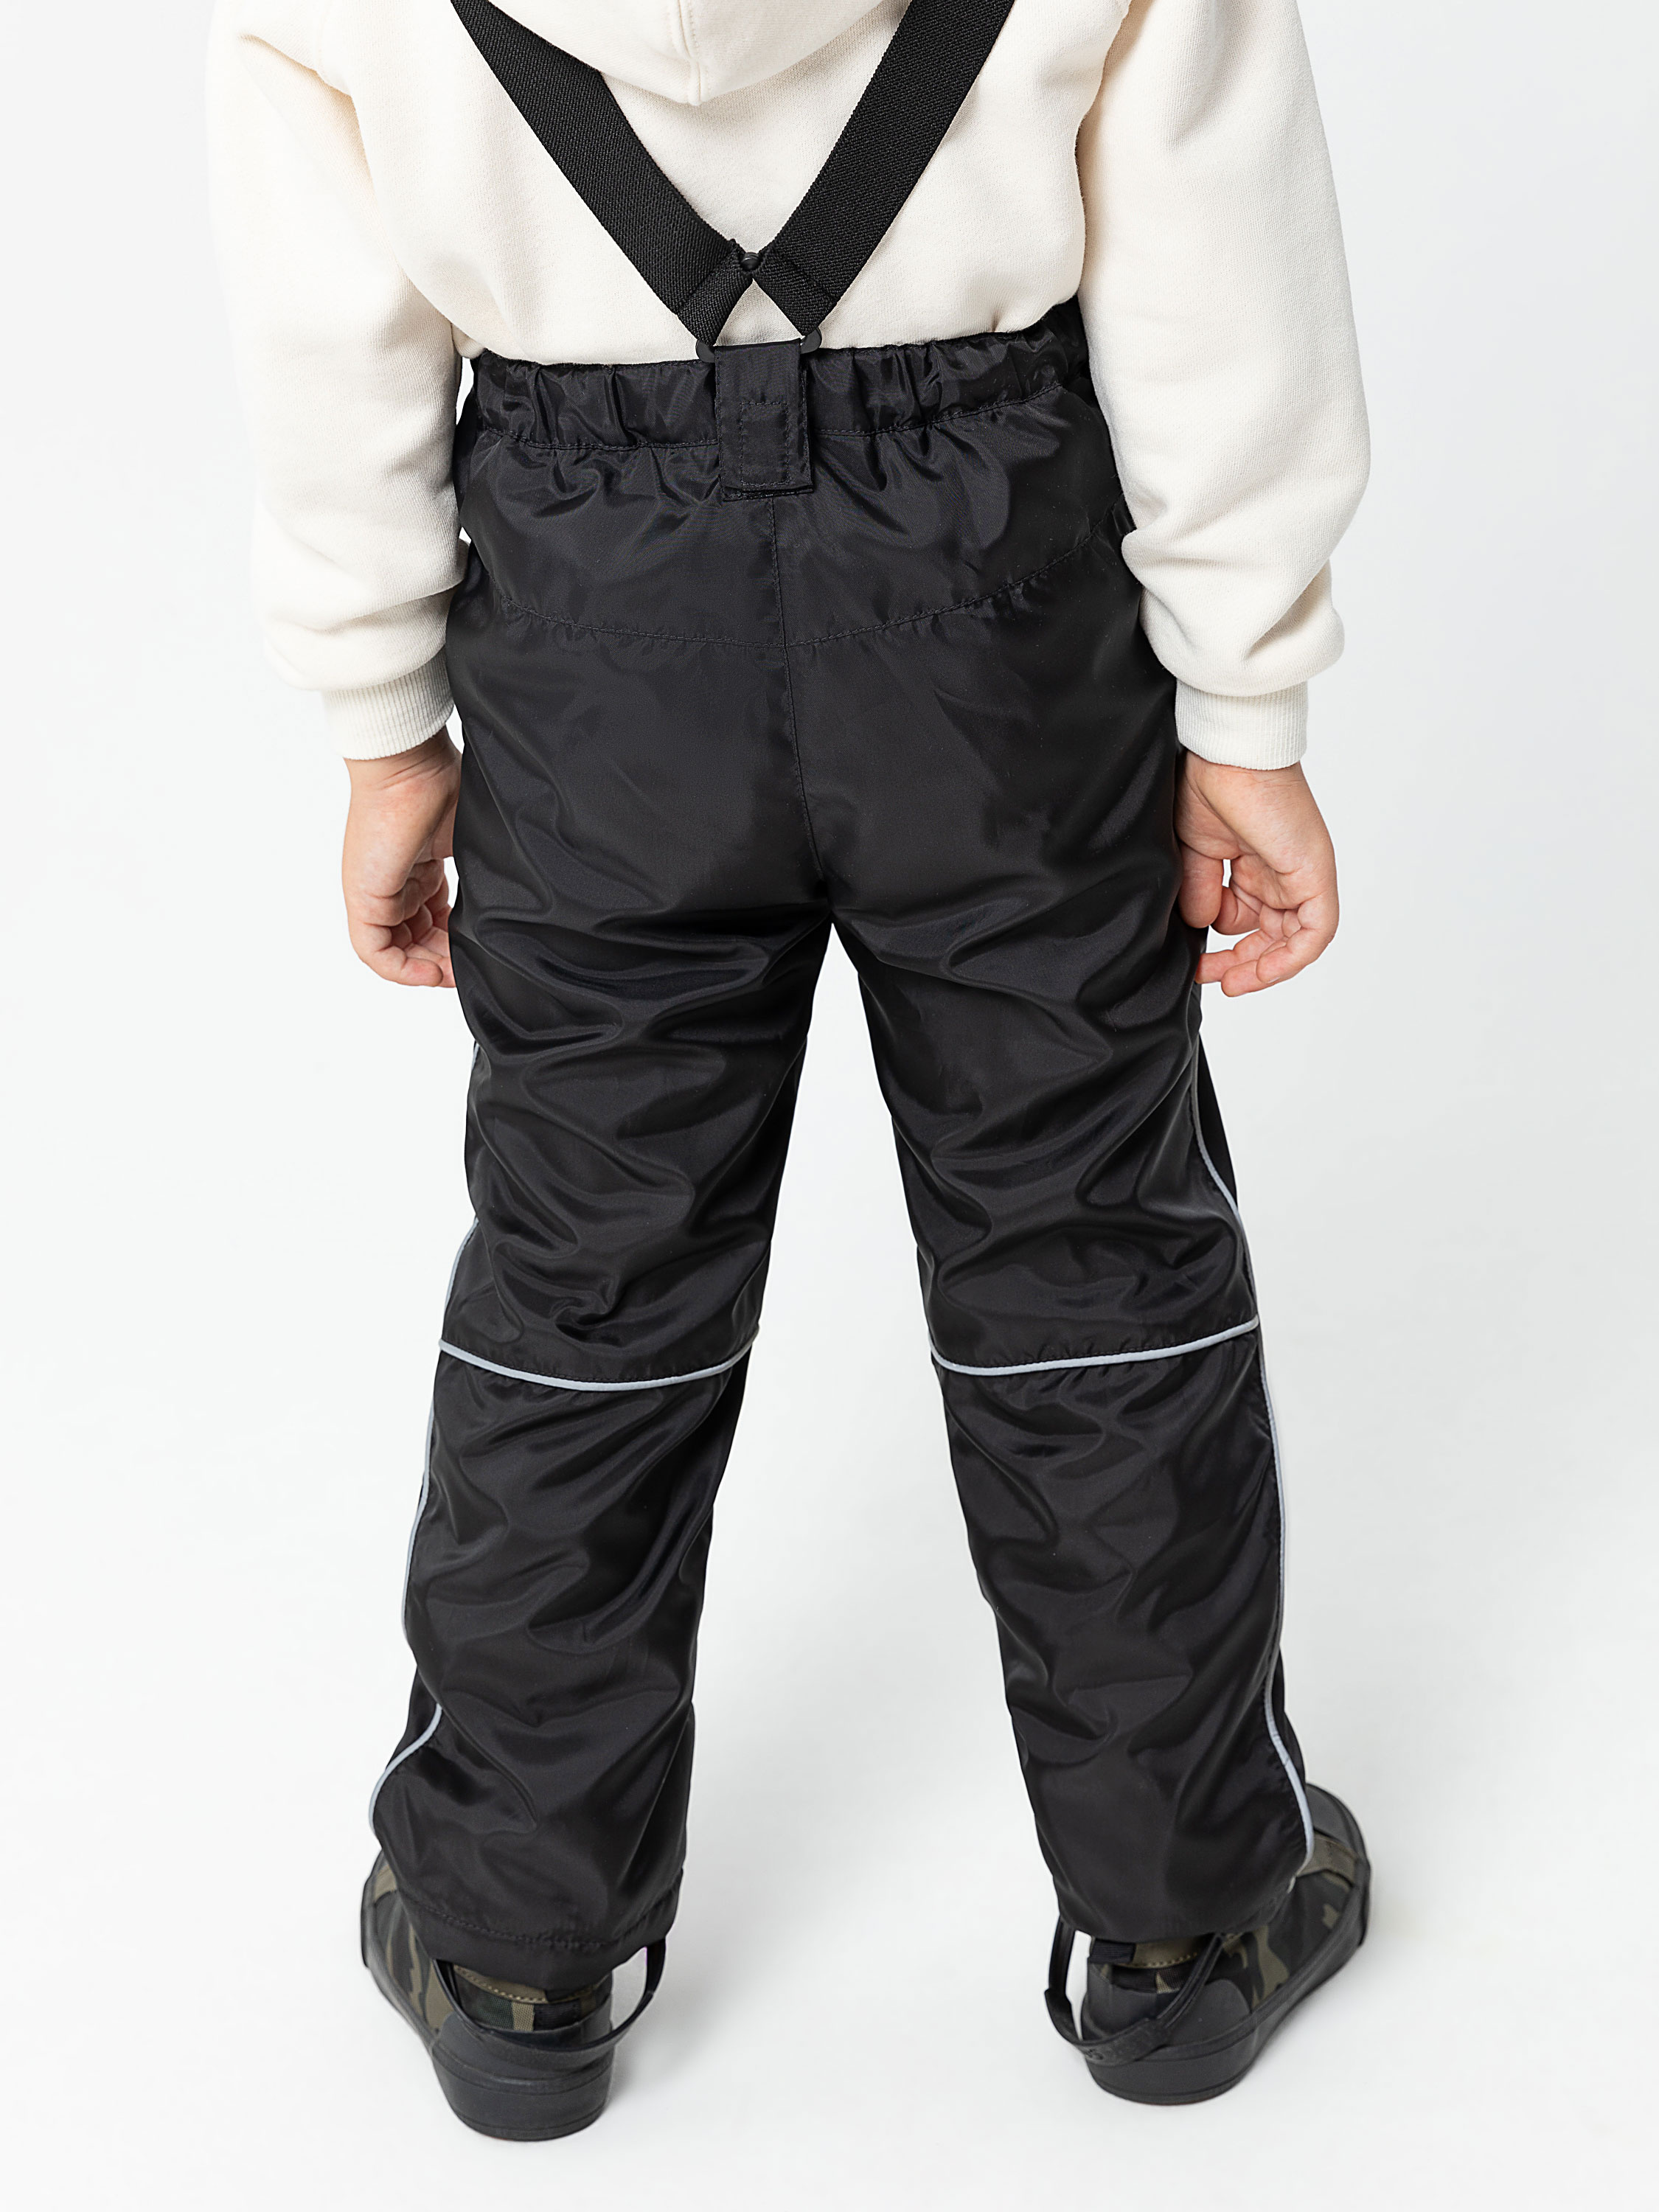 Утепленные брюки для мальчиков цвет: черный, артикул: 0809061605 – купить винтернет-магазине sela